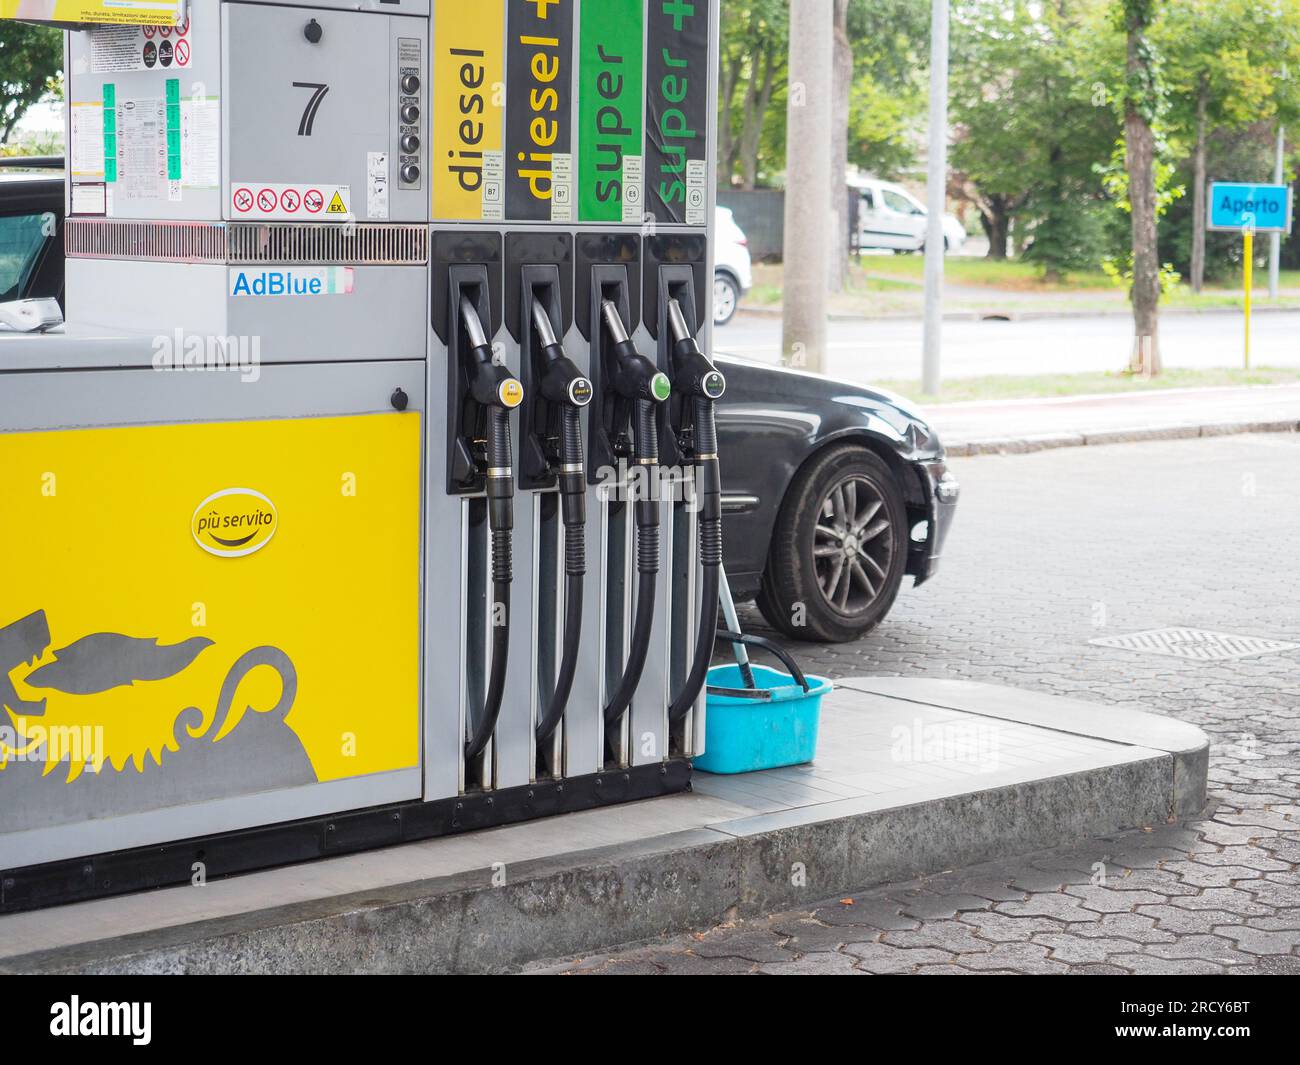 Agip petrol pump immagini e fotografie stock ad alta risoluzione - Alamy